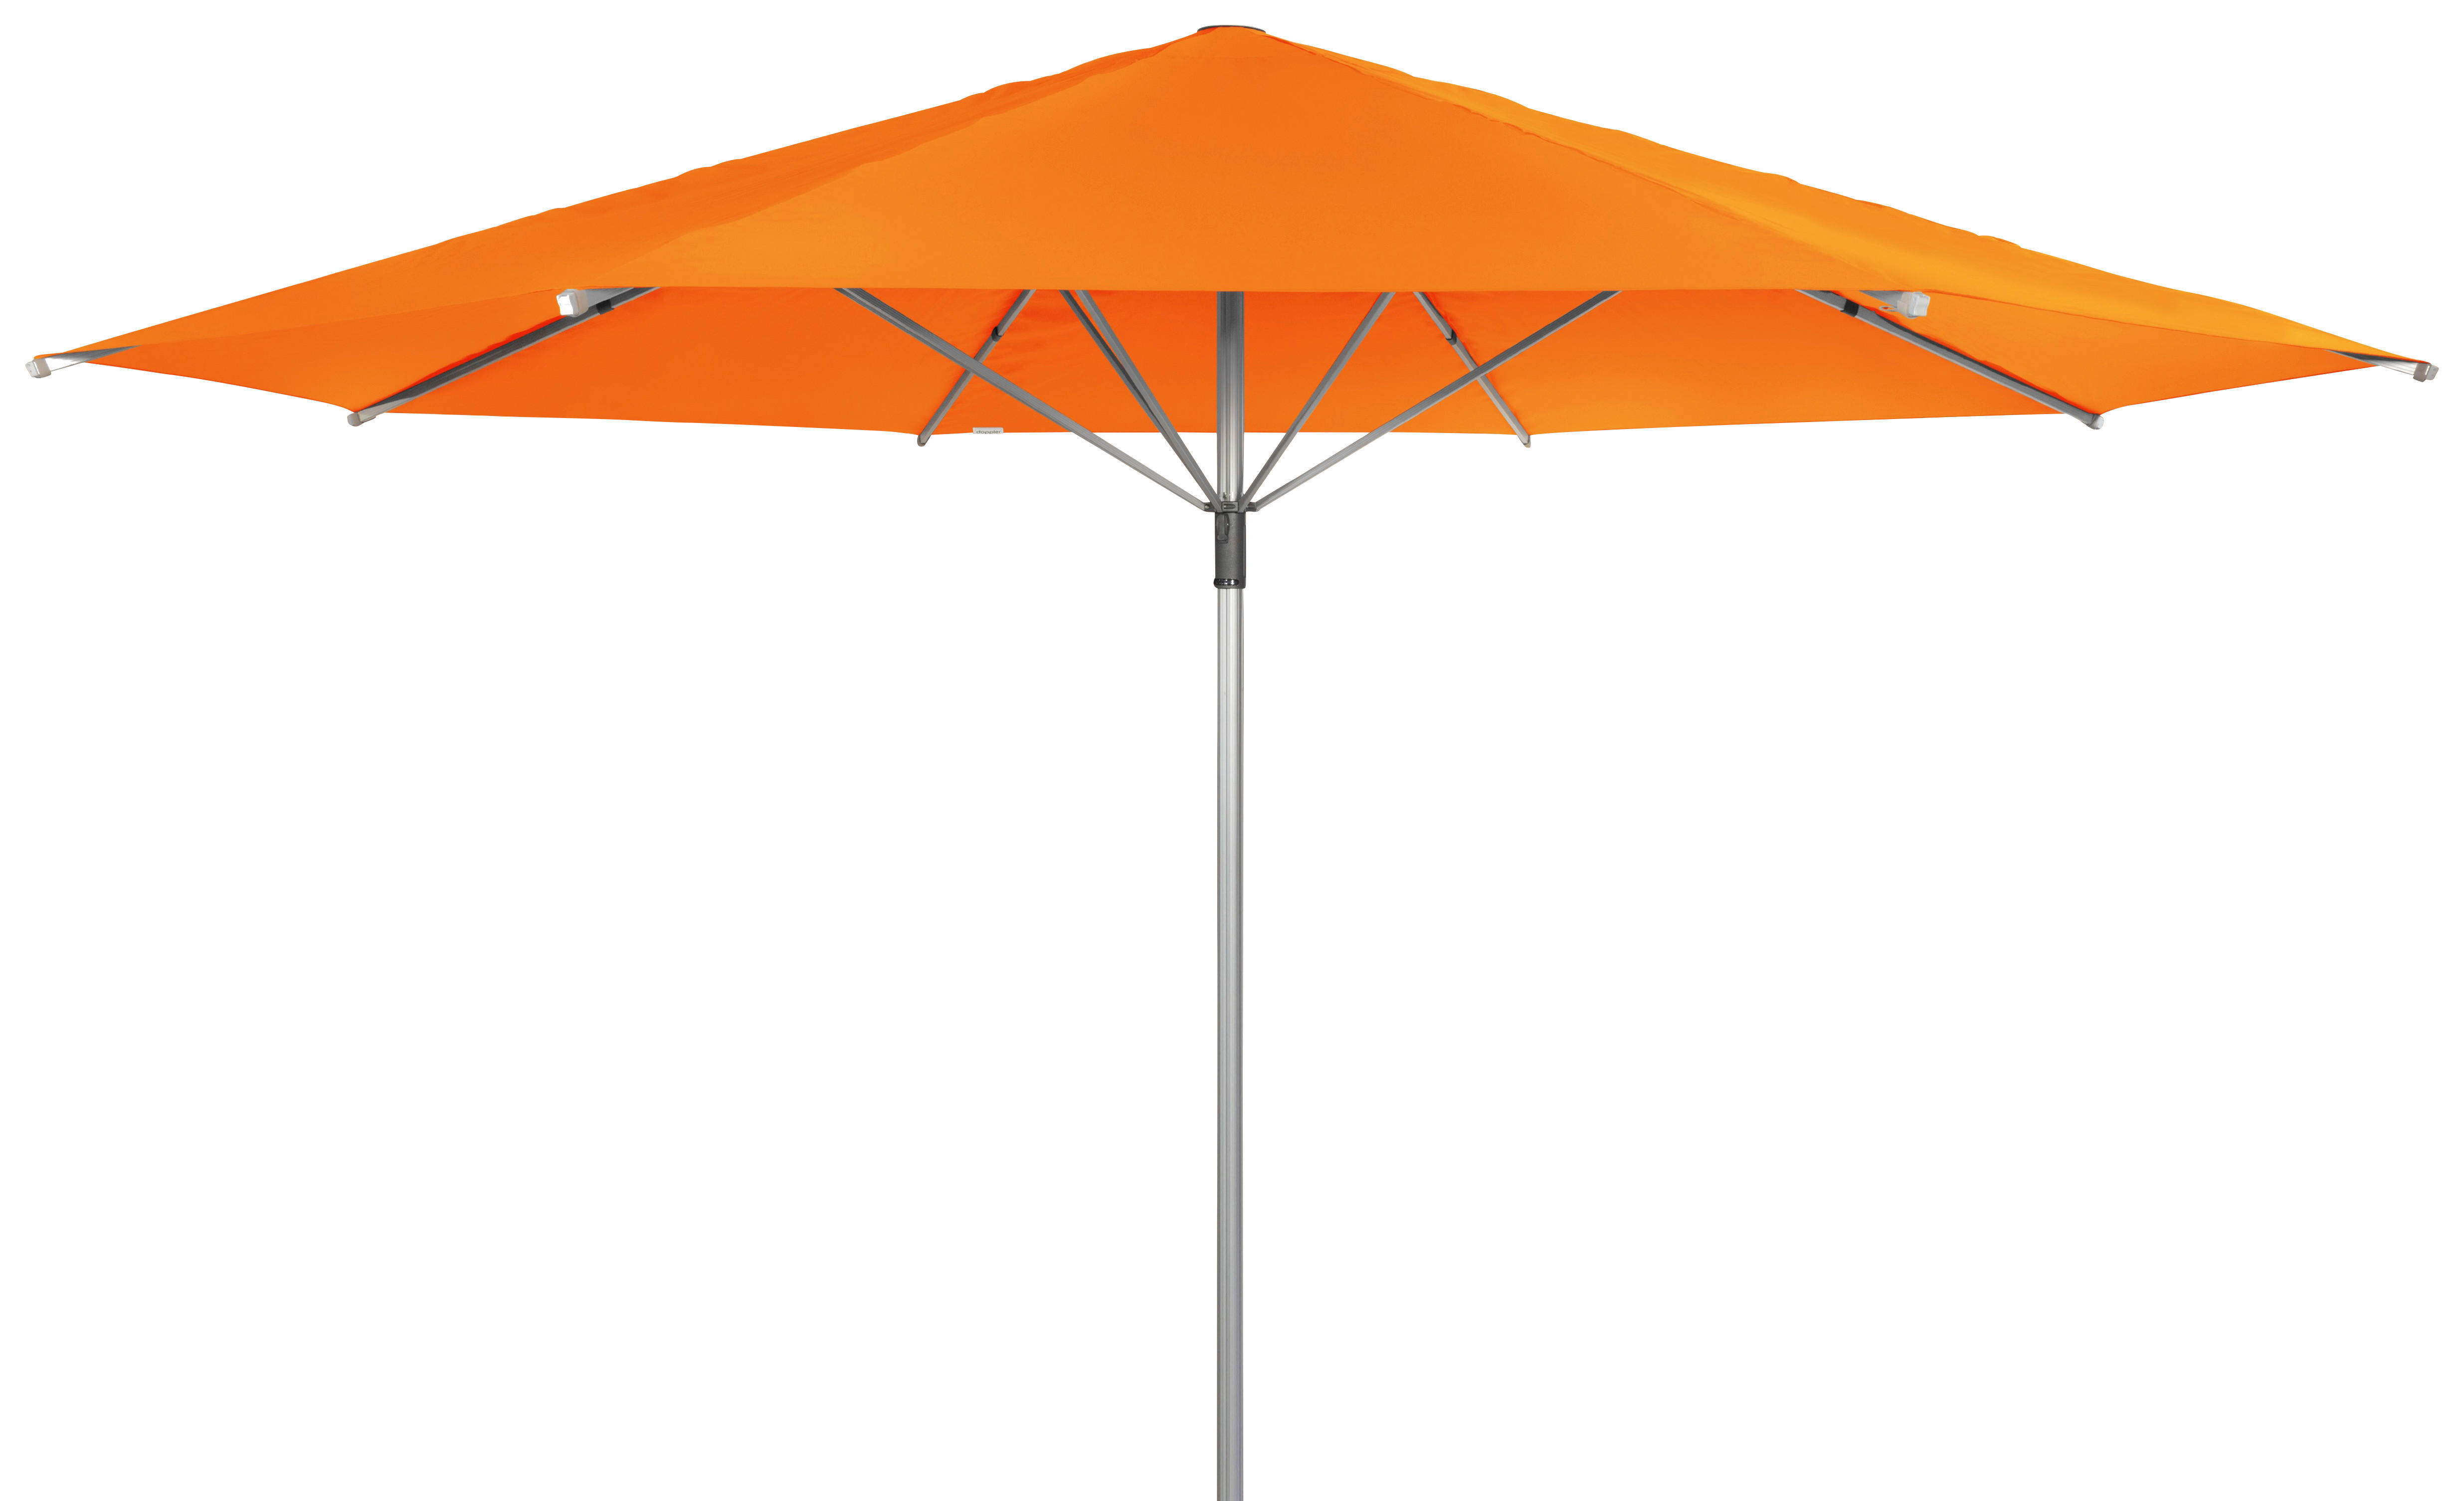 SONNENSCHIRM 500 cm Orange  - Alufarben/Orange, Basics, Textil/Metall (500/500cm) - Doppler